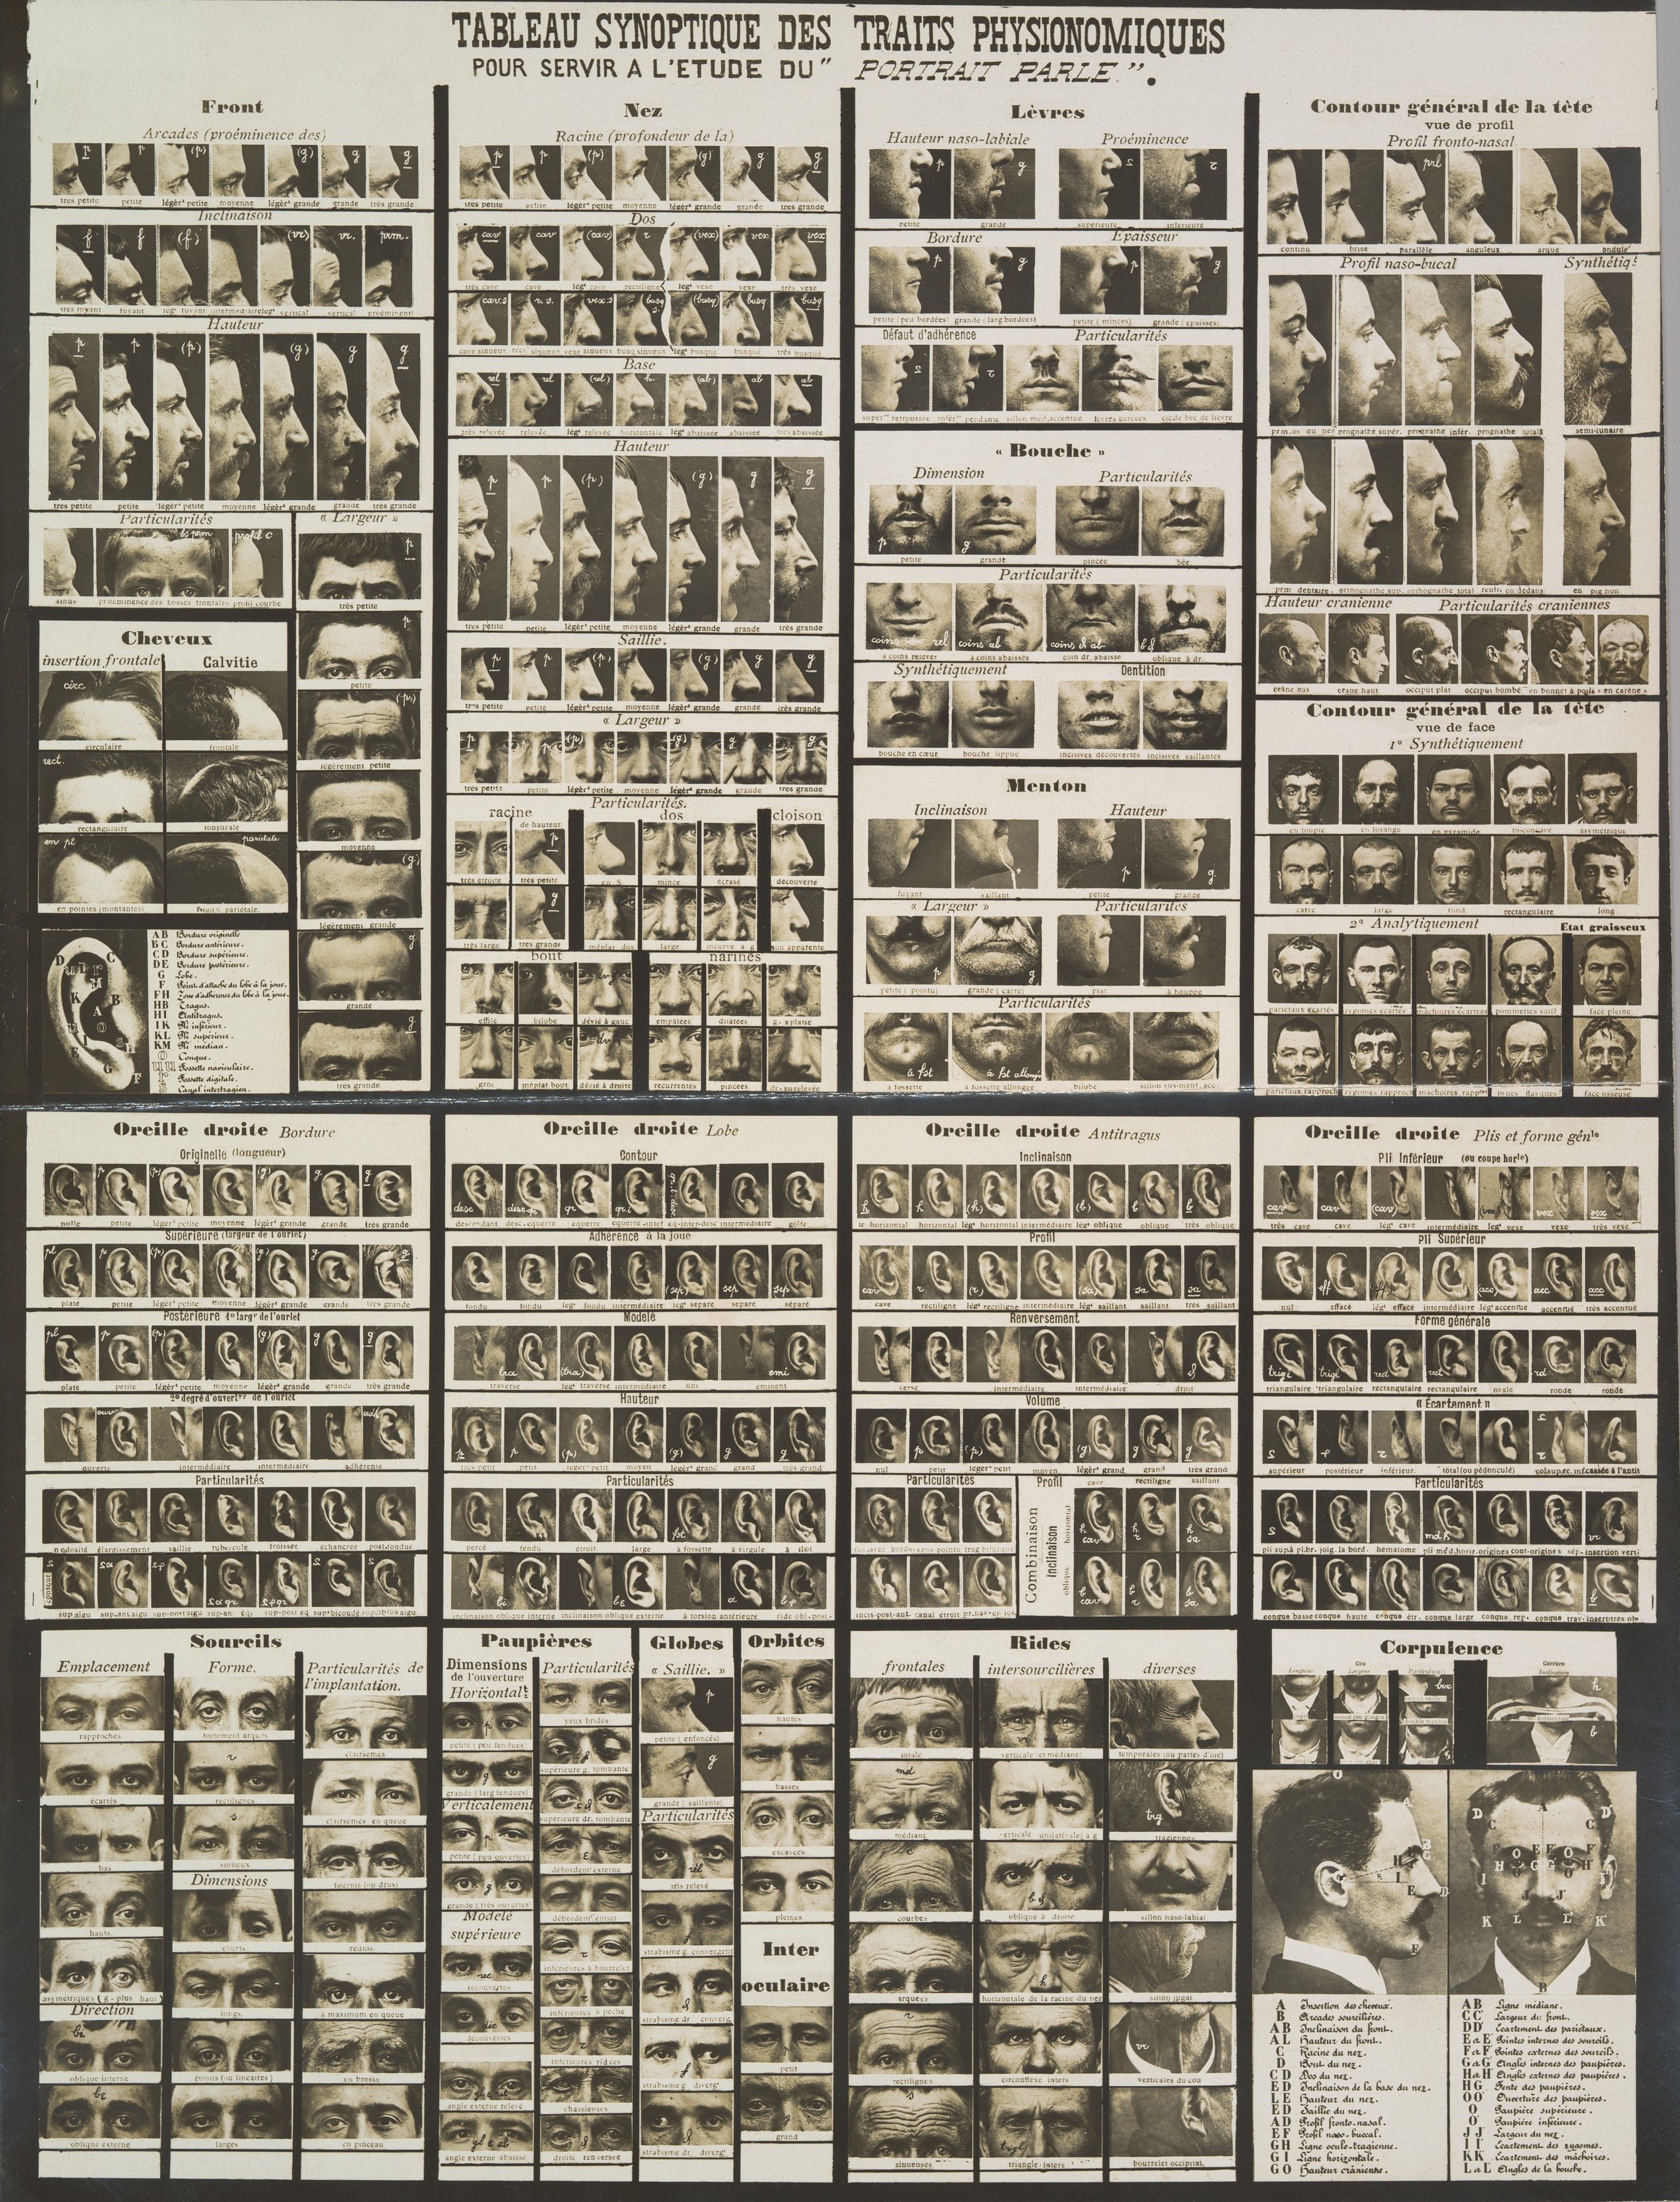 Сводная таблица физиогномических черт для изучения разговорного портрета в криминалистике, 1909. Автор Альфонс Бертильон